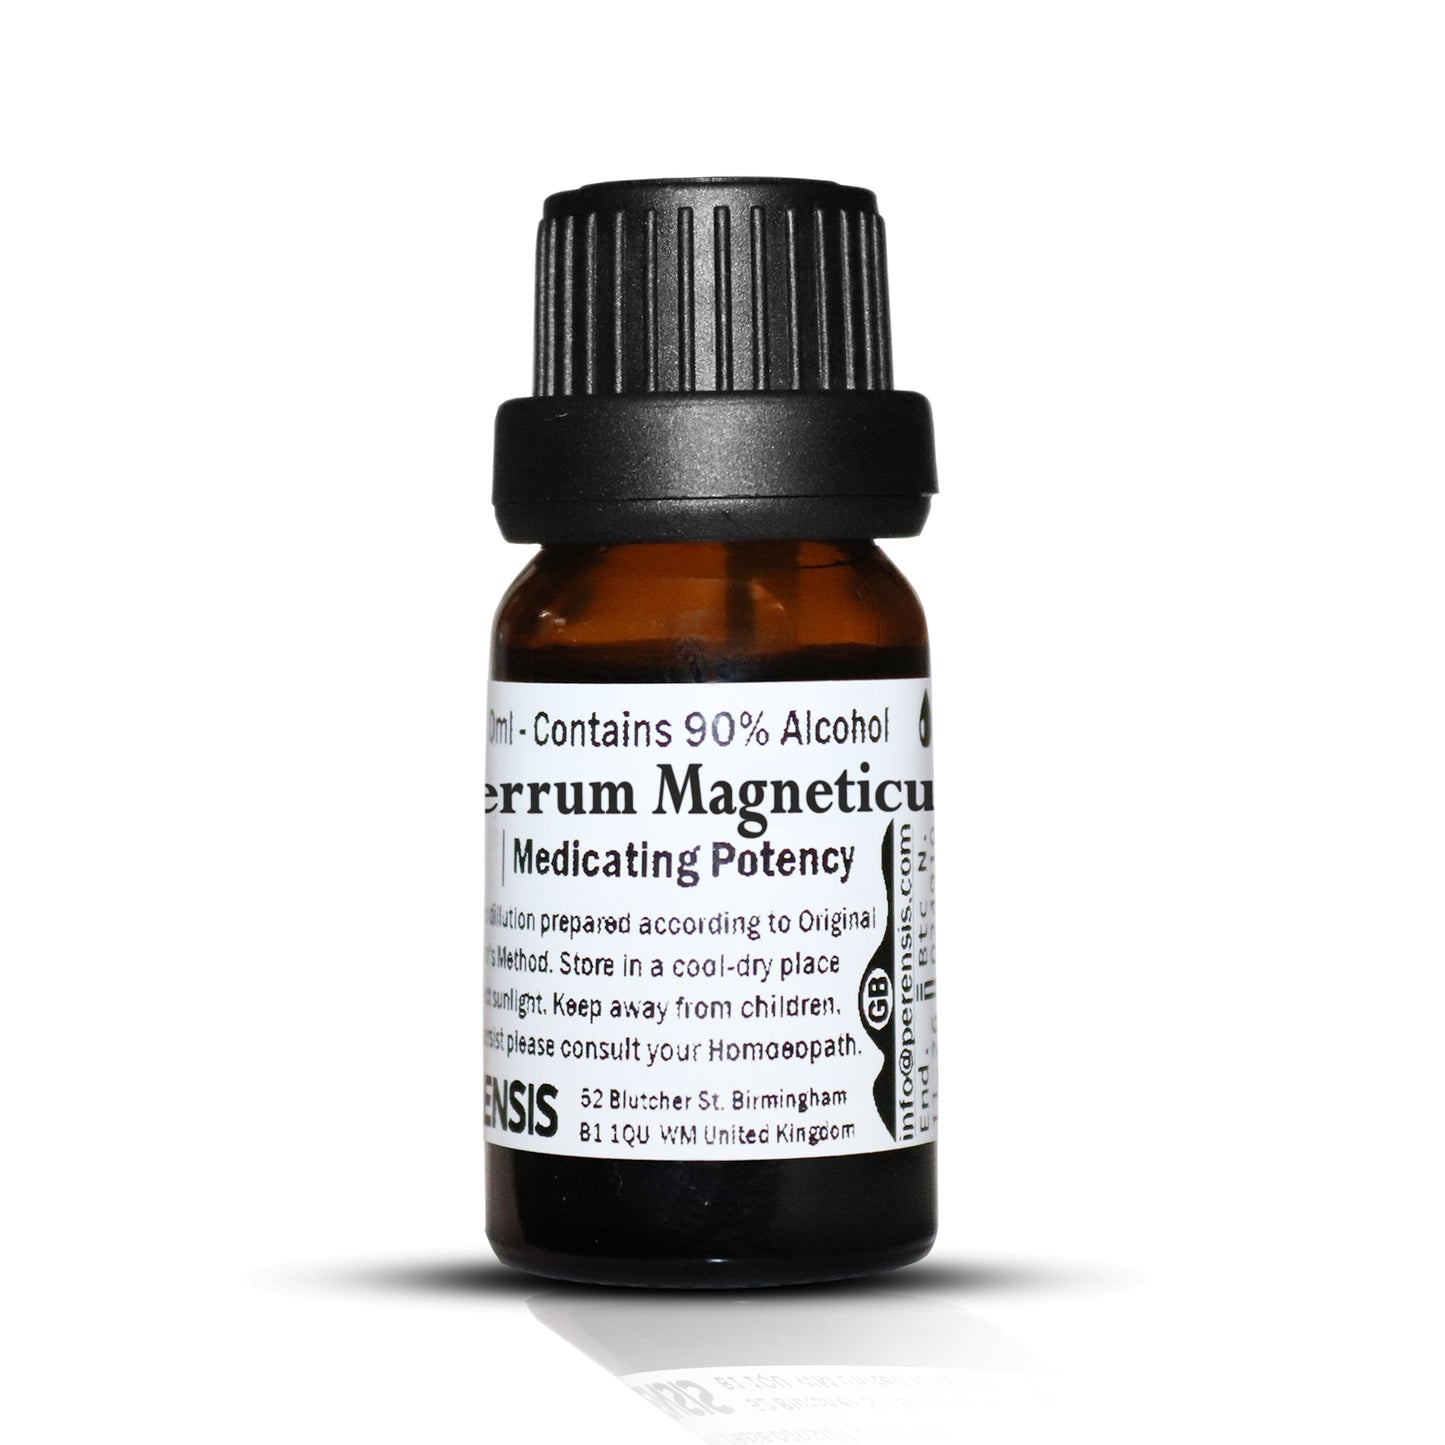 Ferrum Magneticum